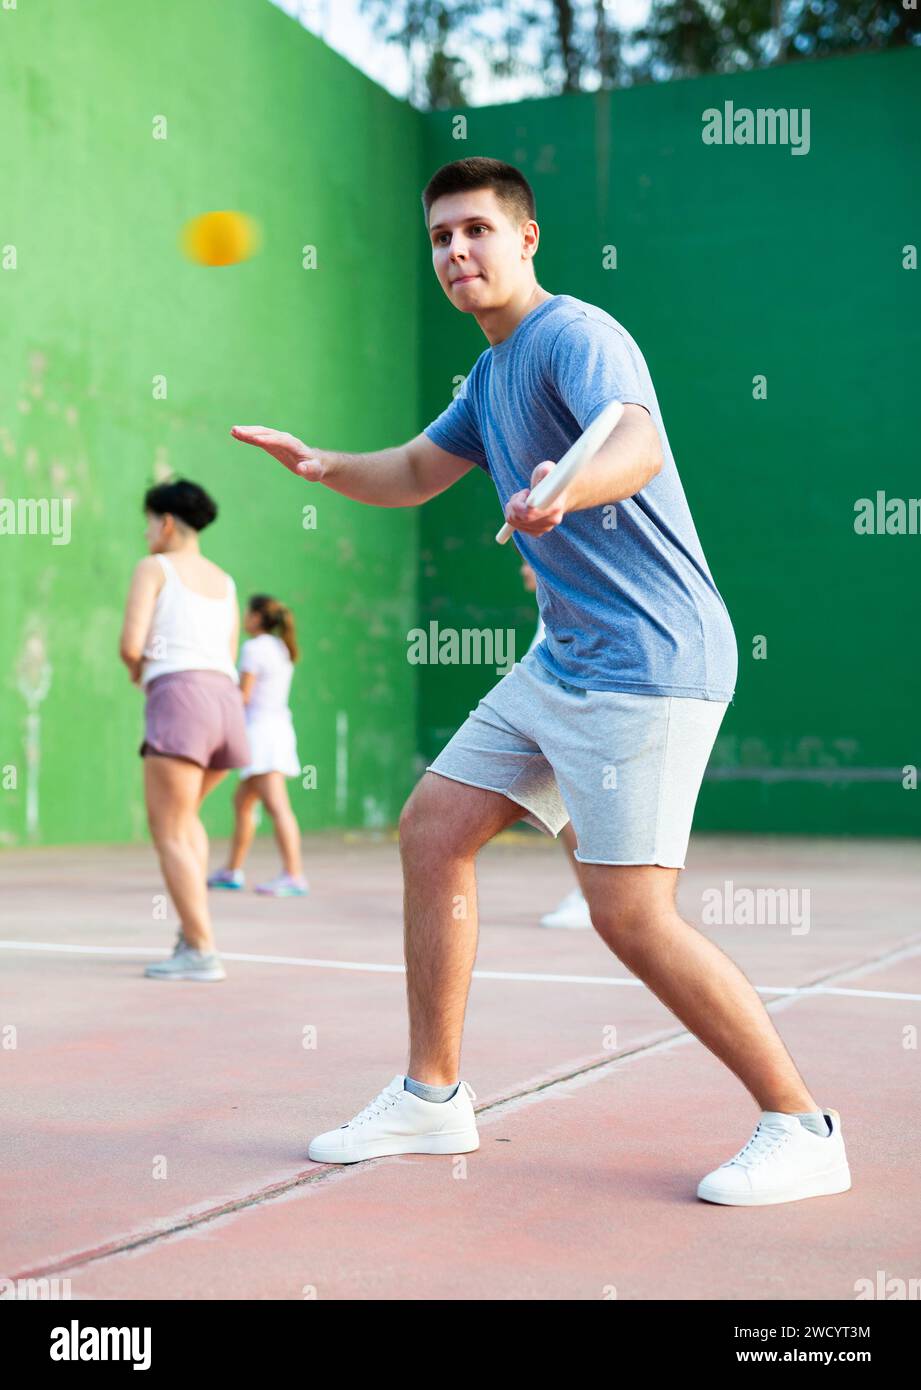 Jeune joueur de paleta fronton concentré frappant le ballon avec raquette Banque D'Images